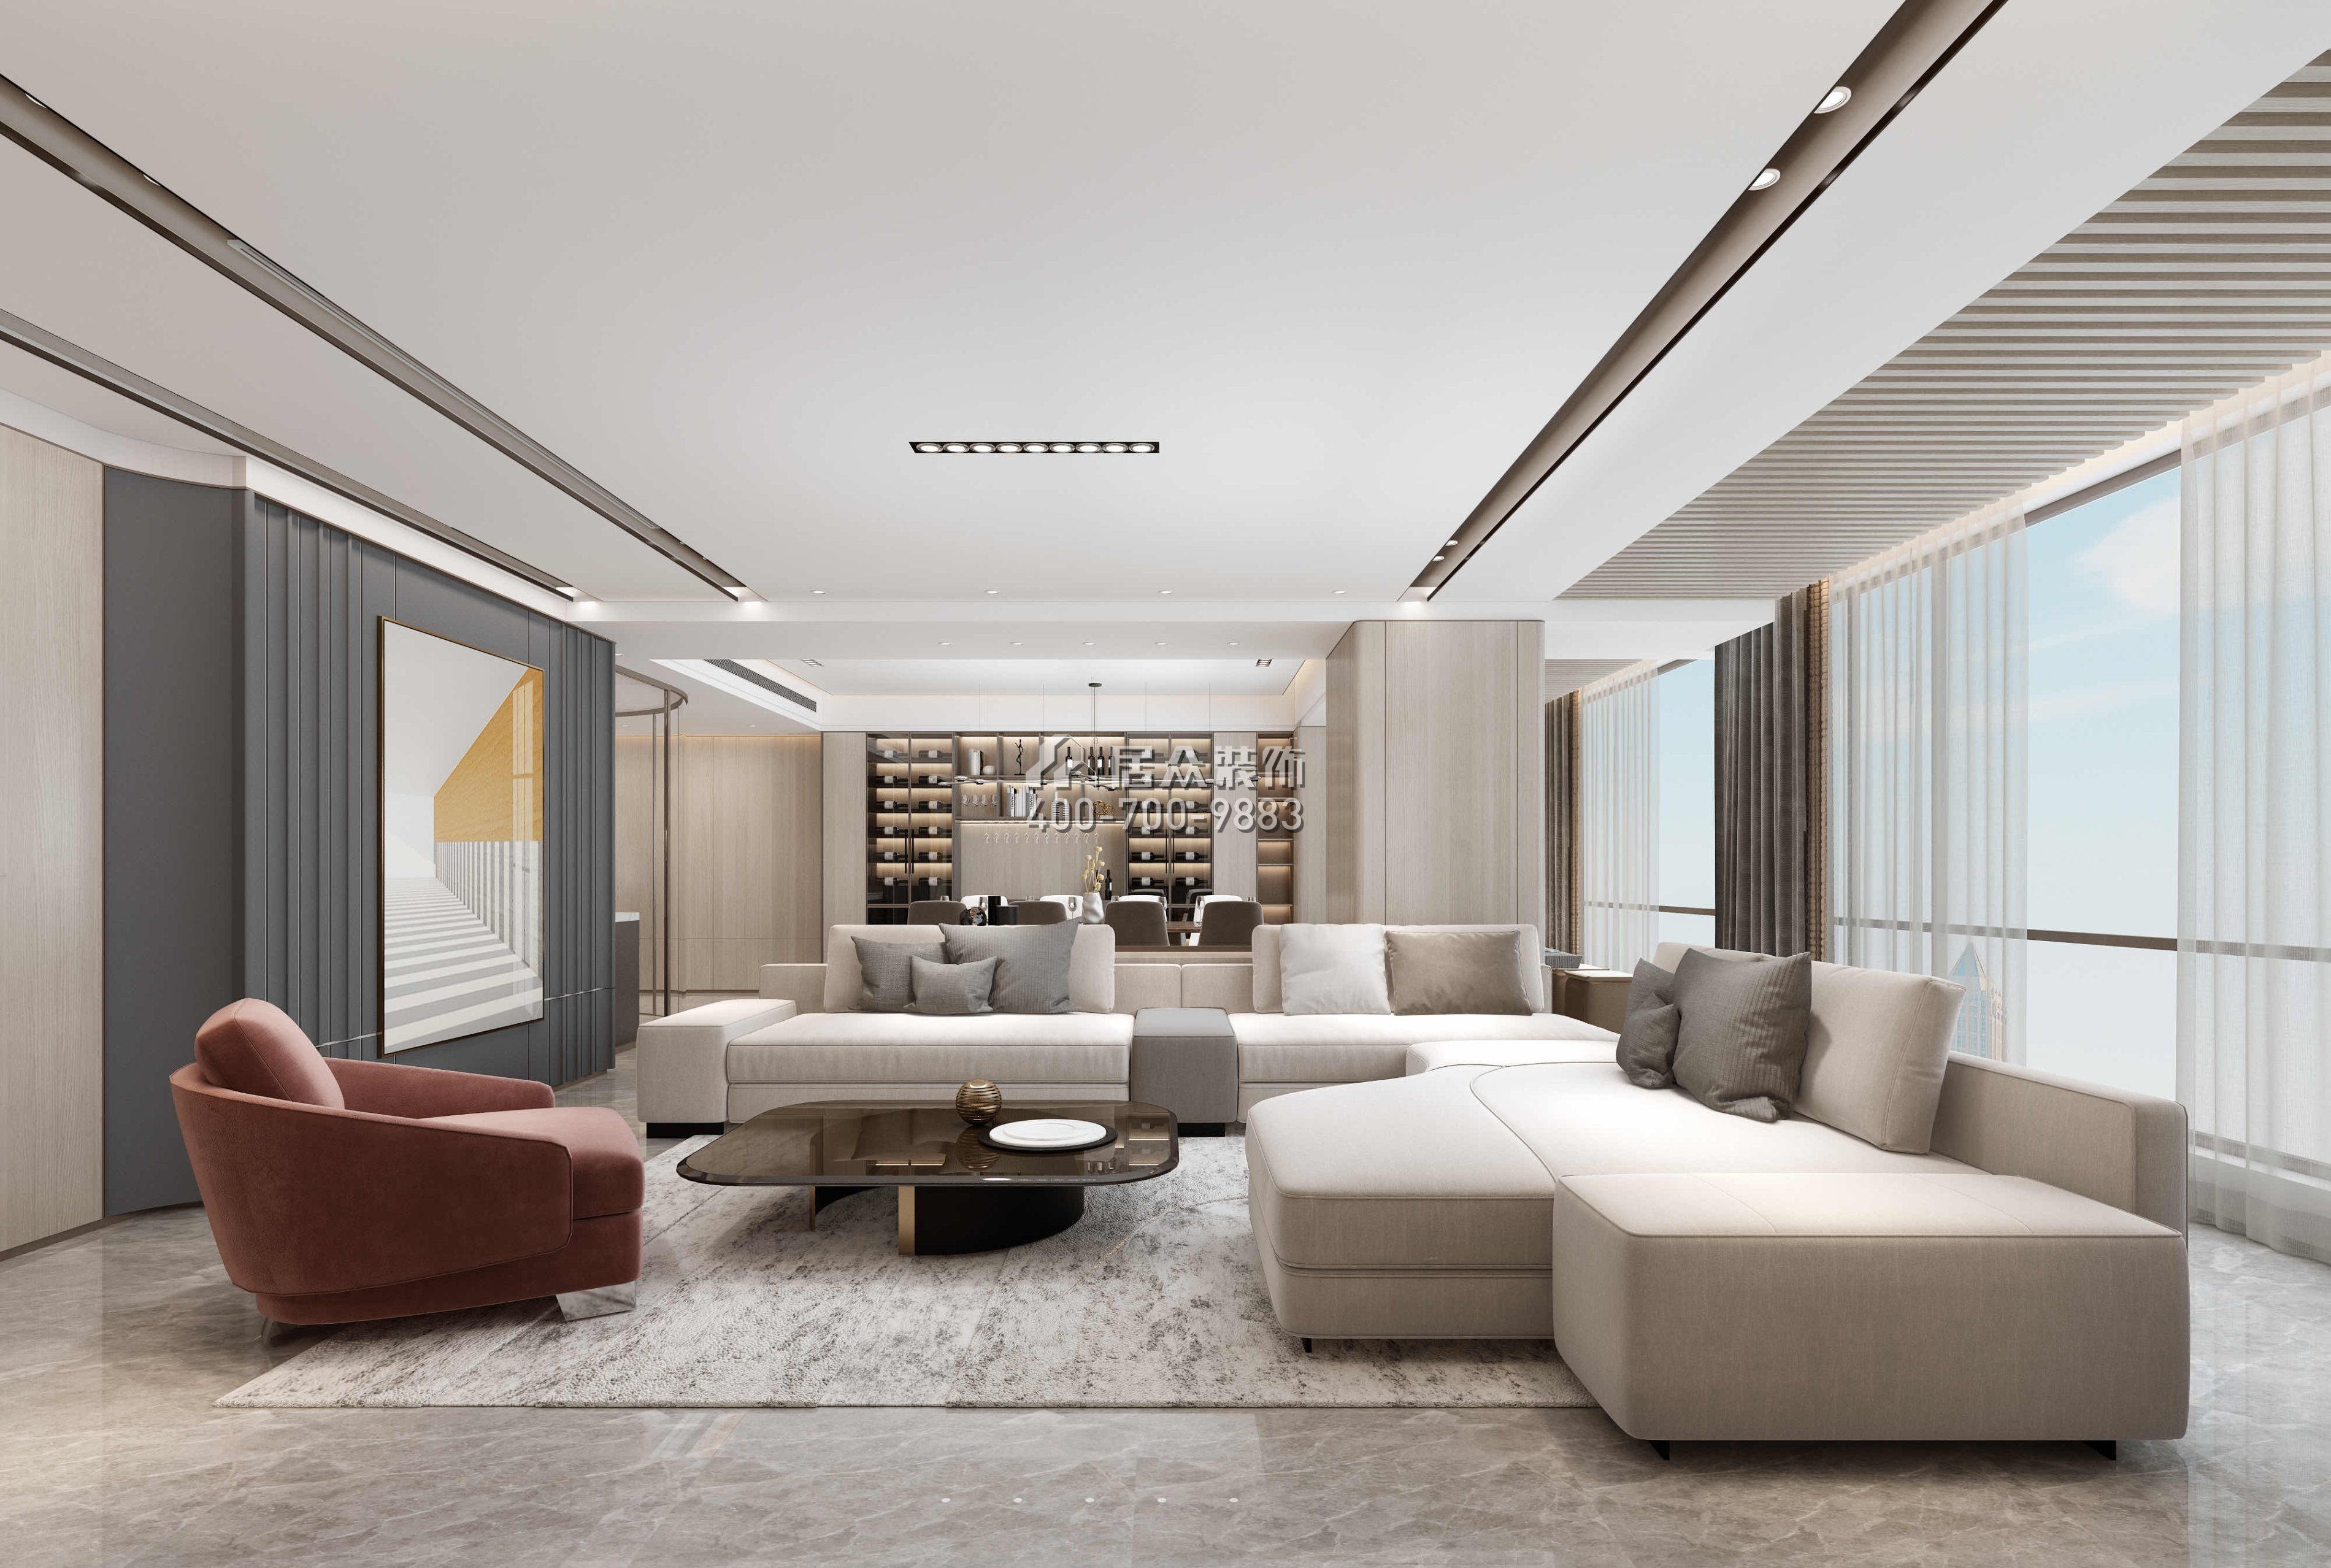 華潤城潤府198平方米現代簡約風格平層戶型客廳裝修效果圖